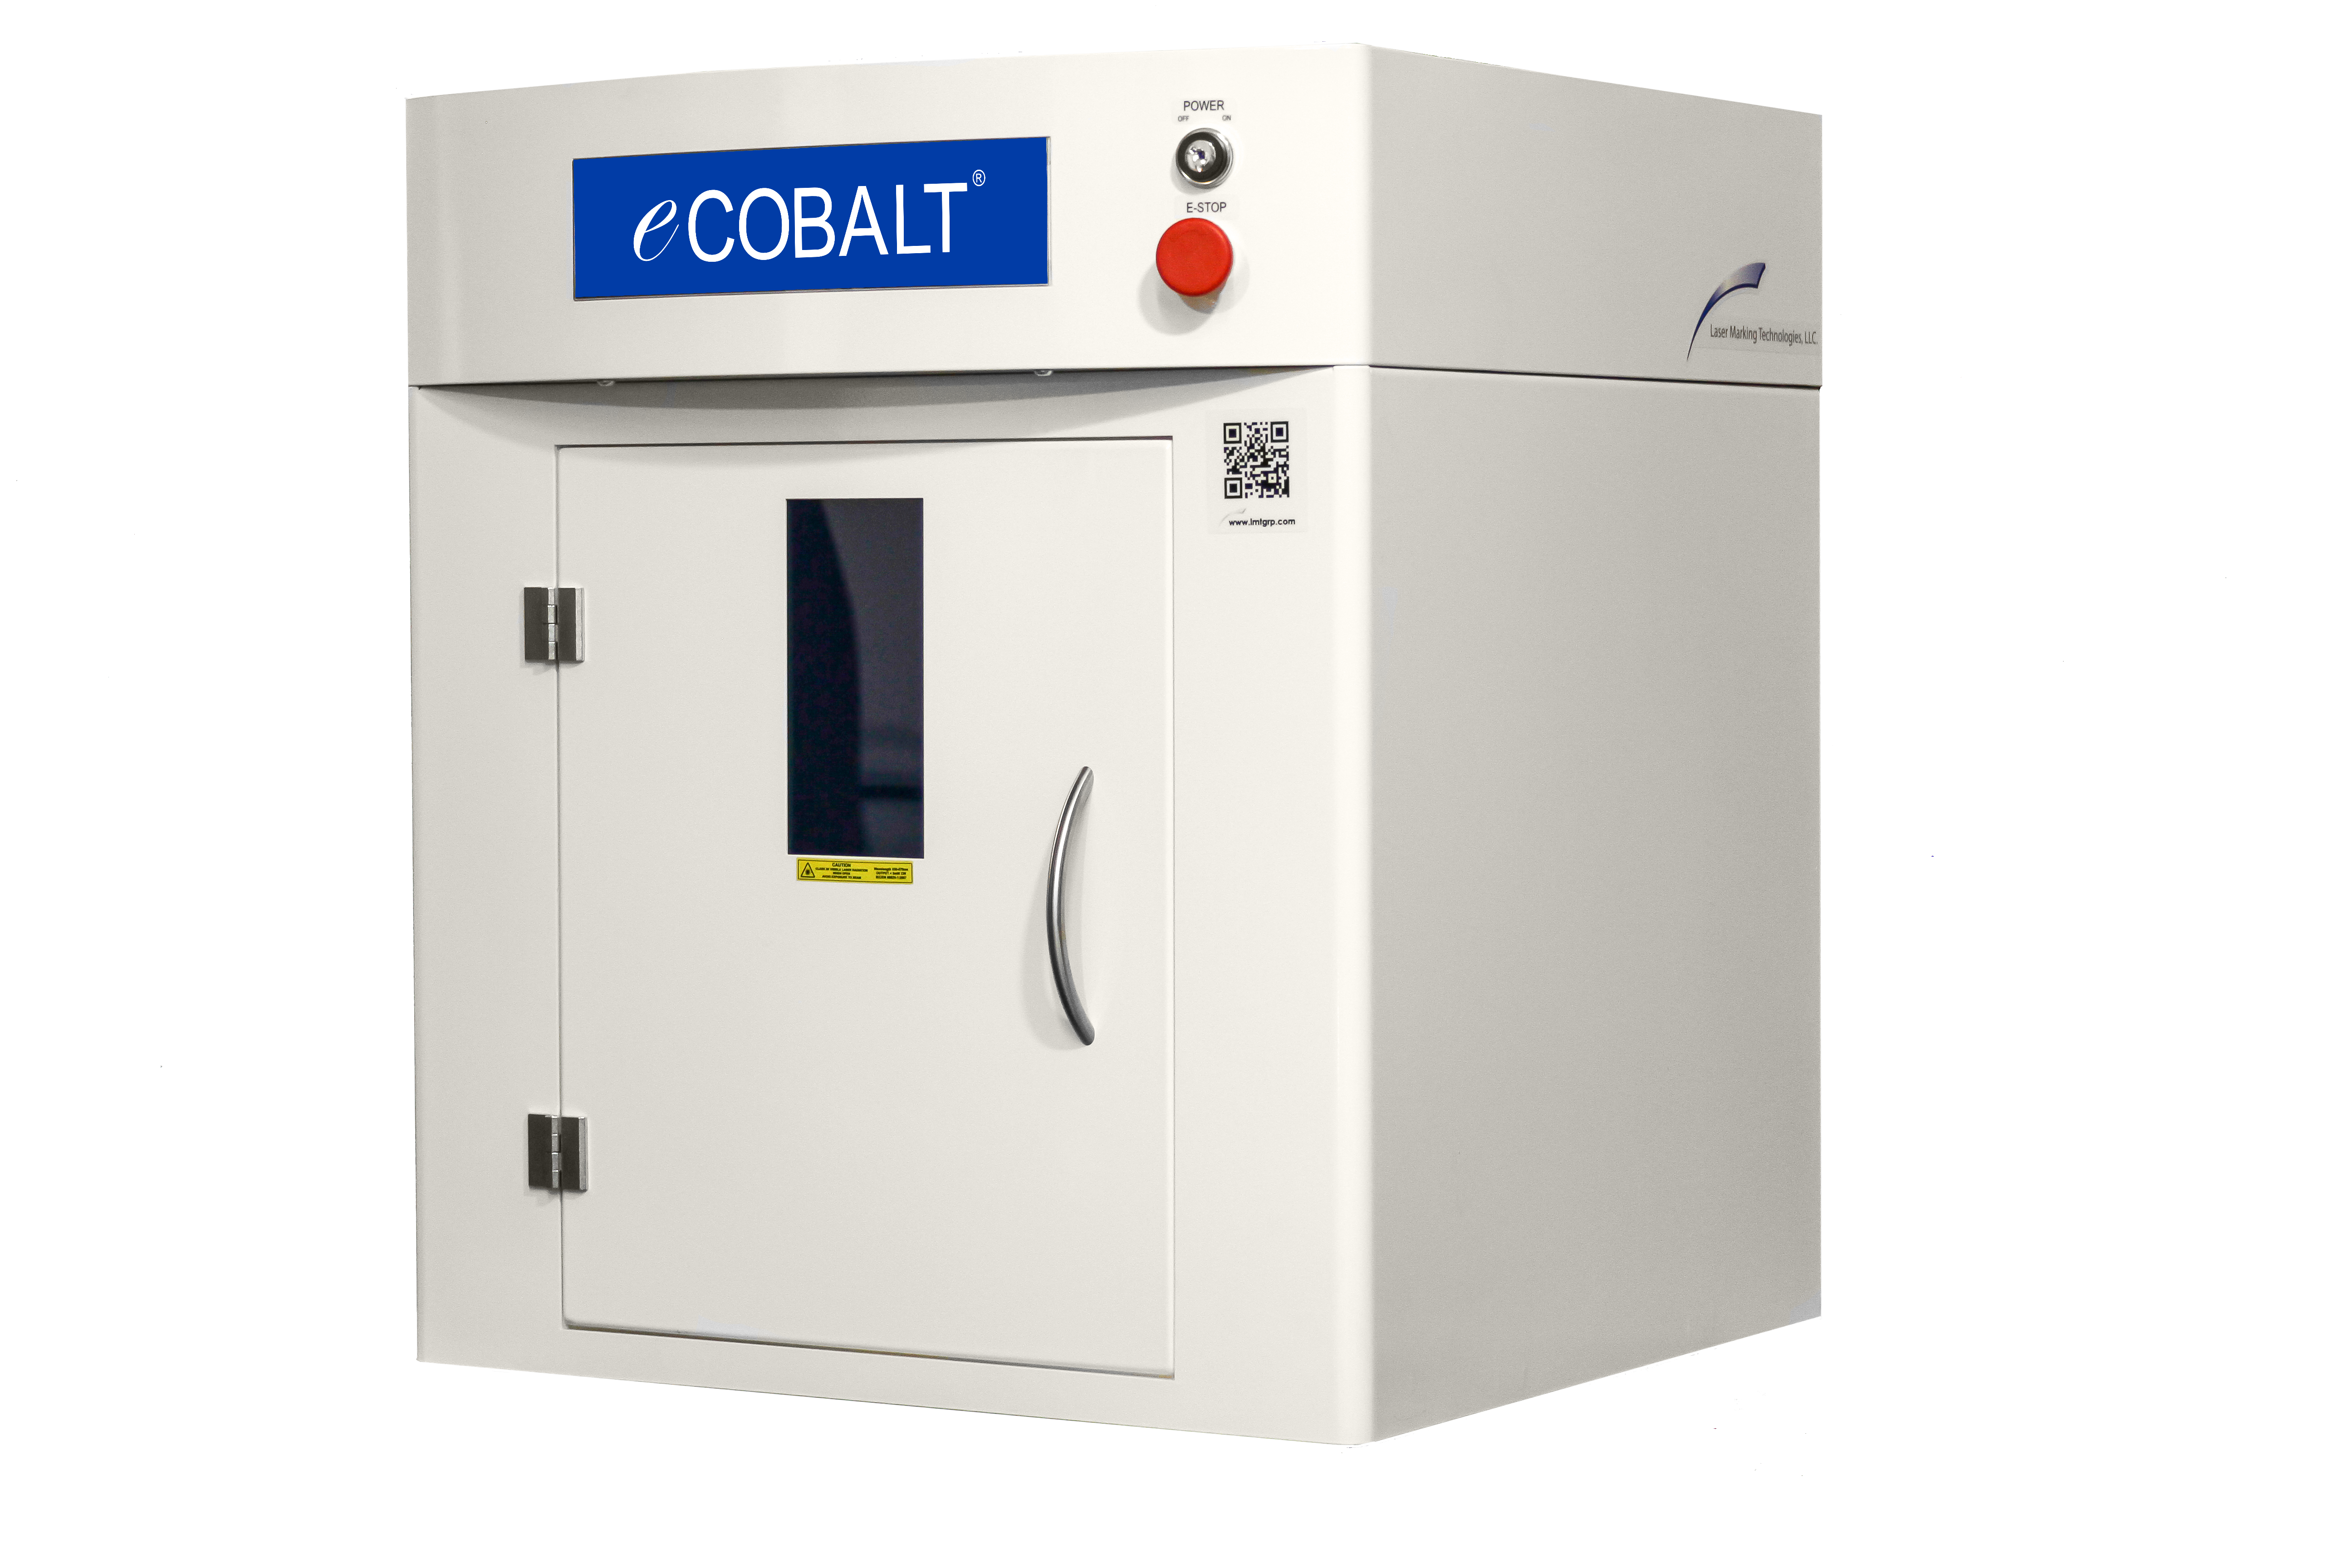 eCobalt Laser System